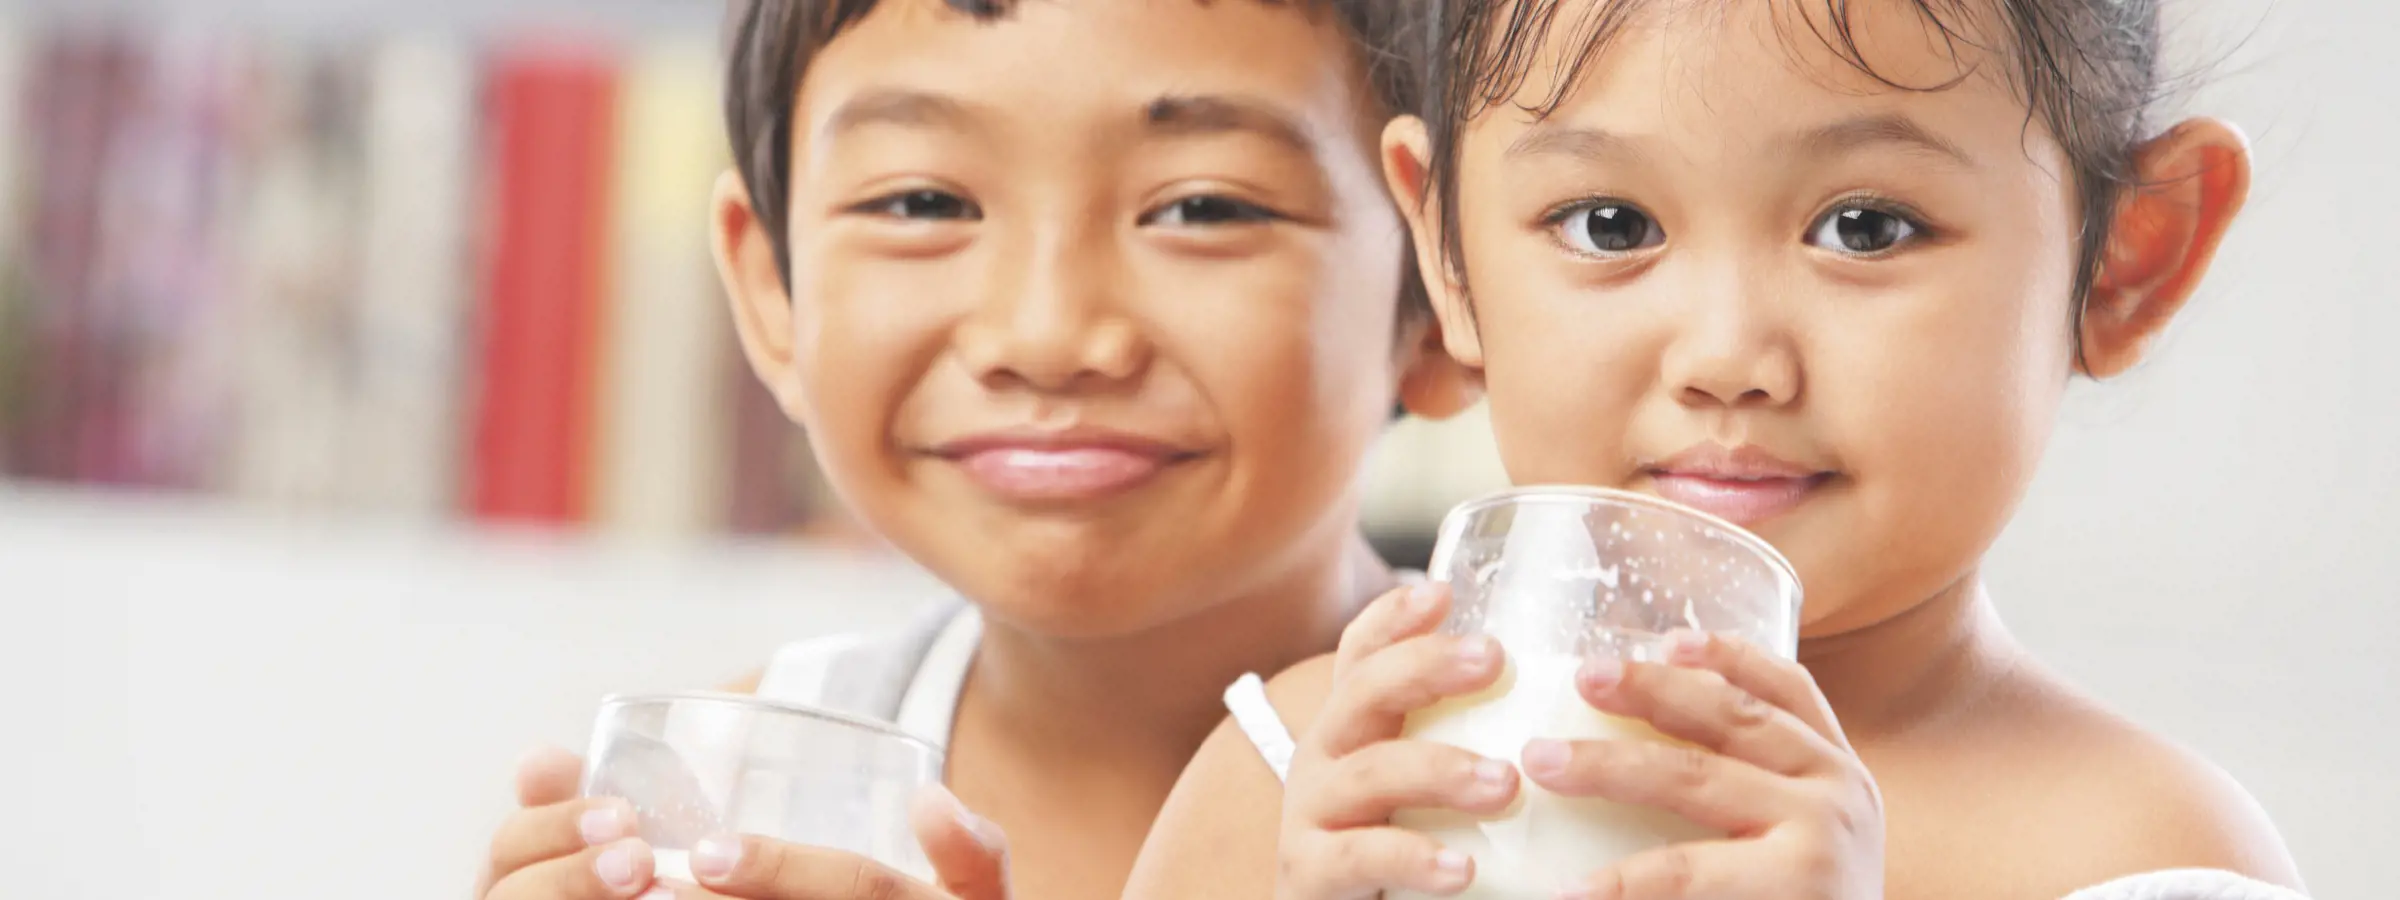 niños pequeños bebiendo alimento lácteo